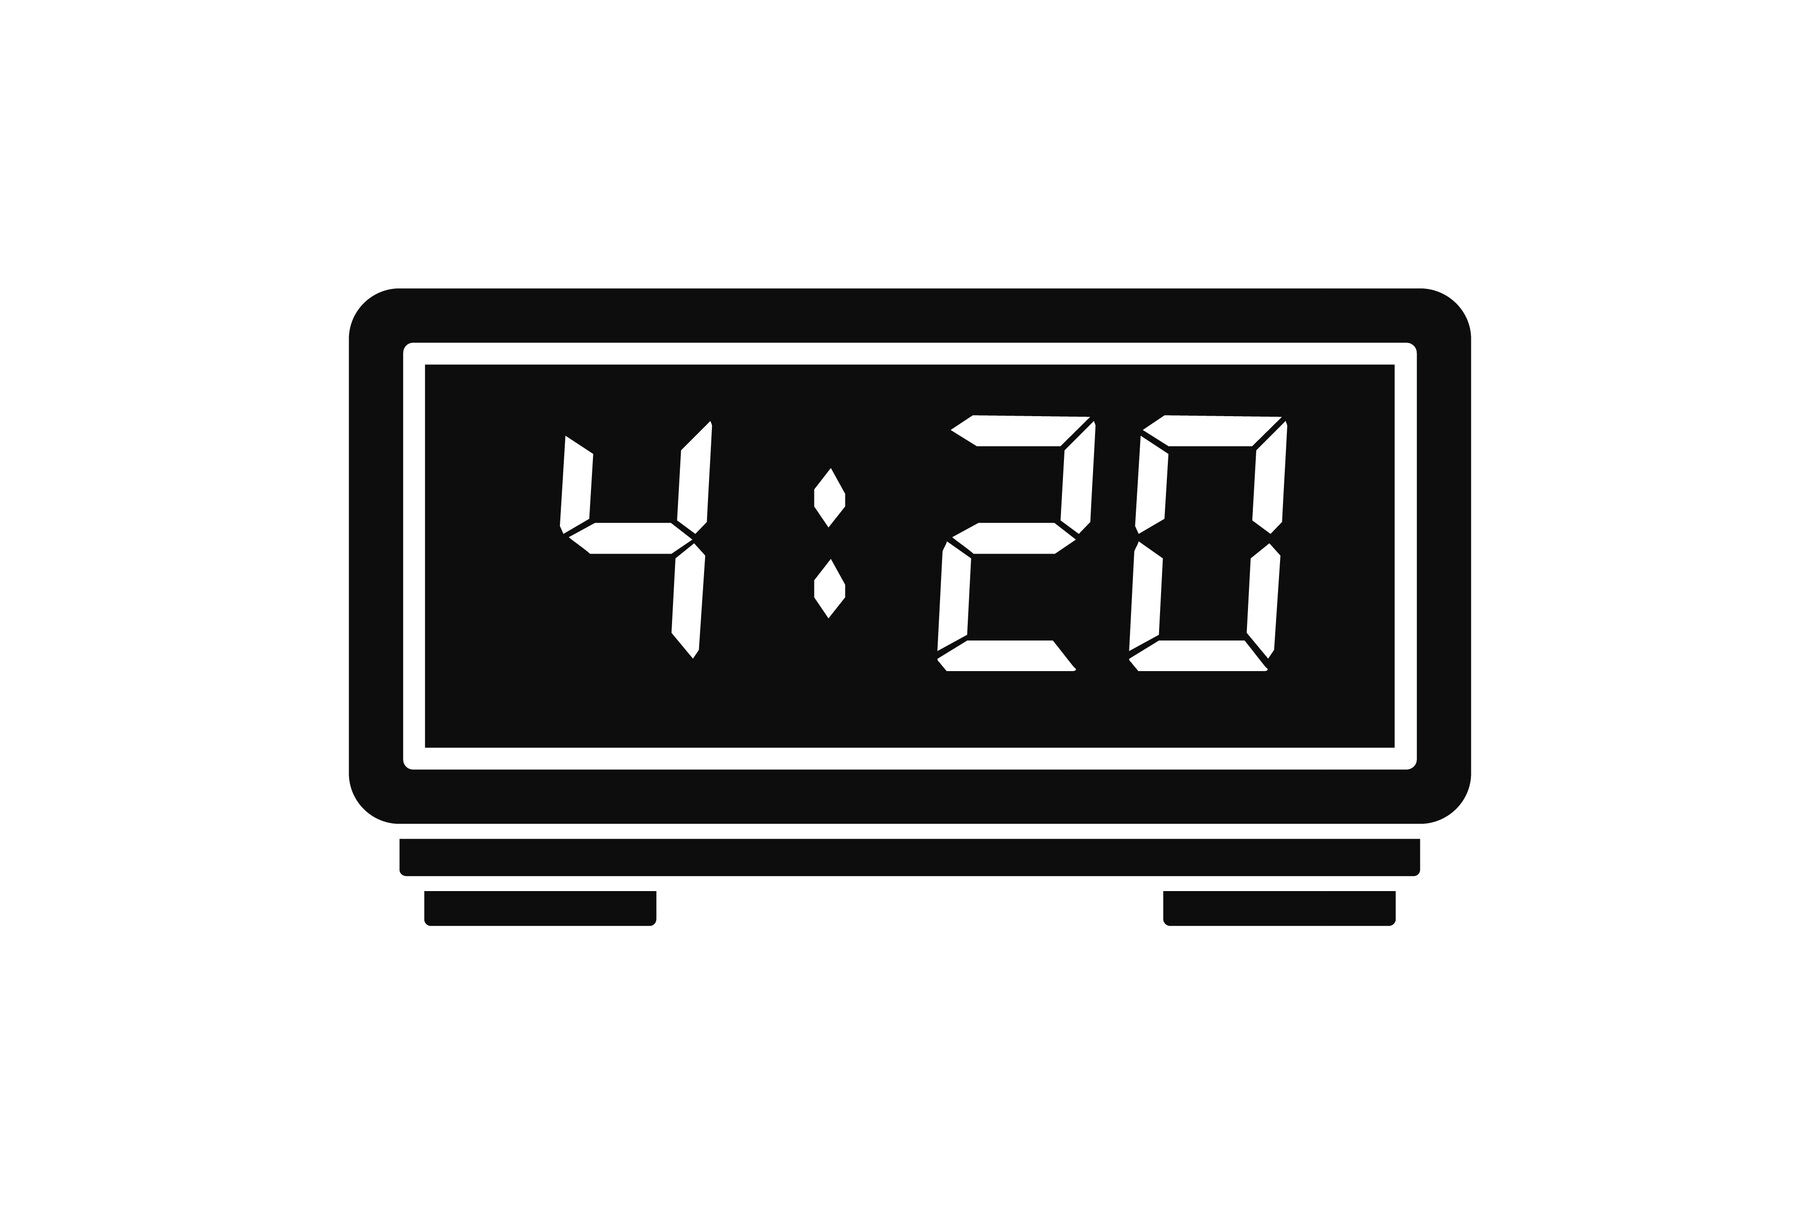 digital alarm clock png